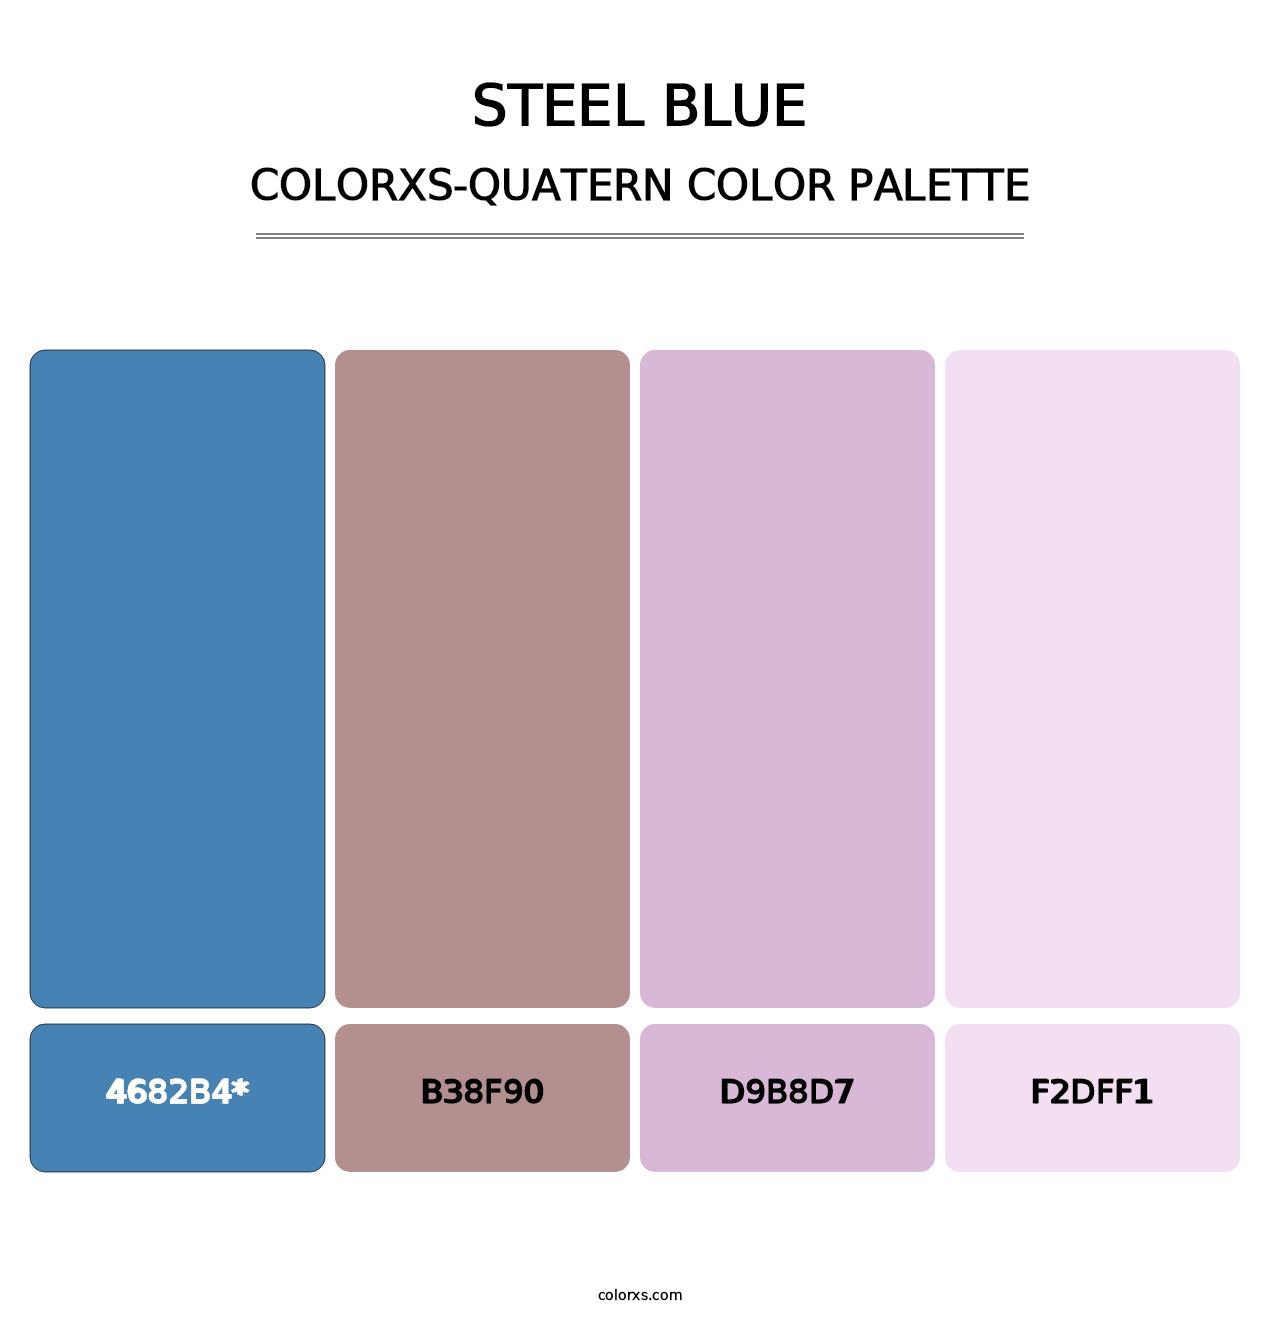 Steel Blue - Colorxs Quatern Palette